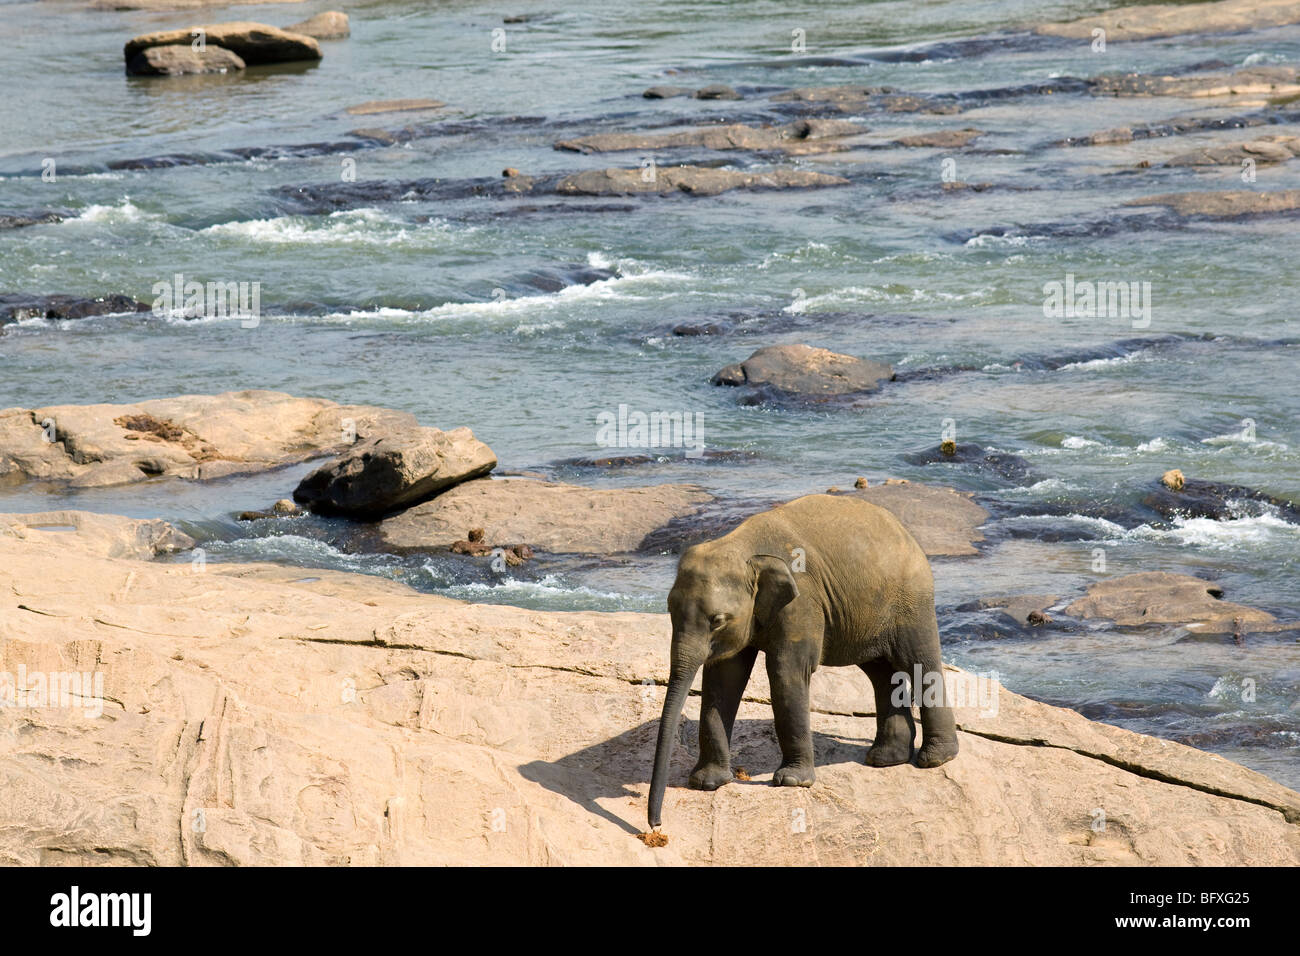 Indian Elephant, Sri Lanka. Stock Photo